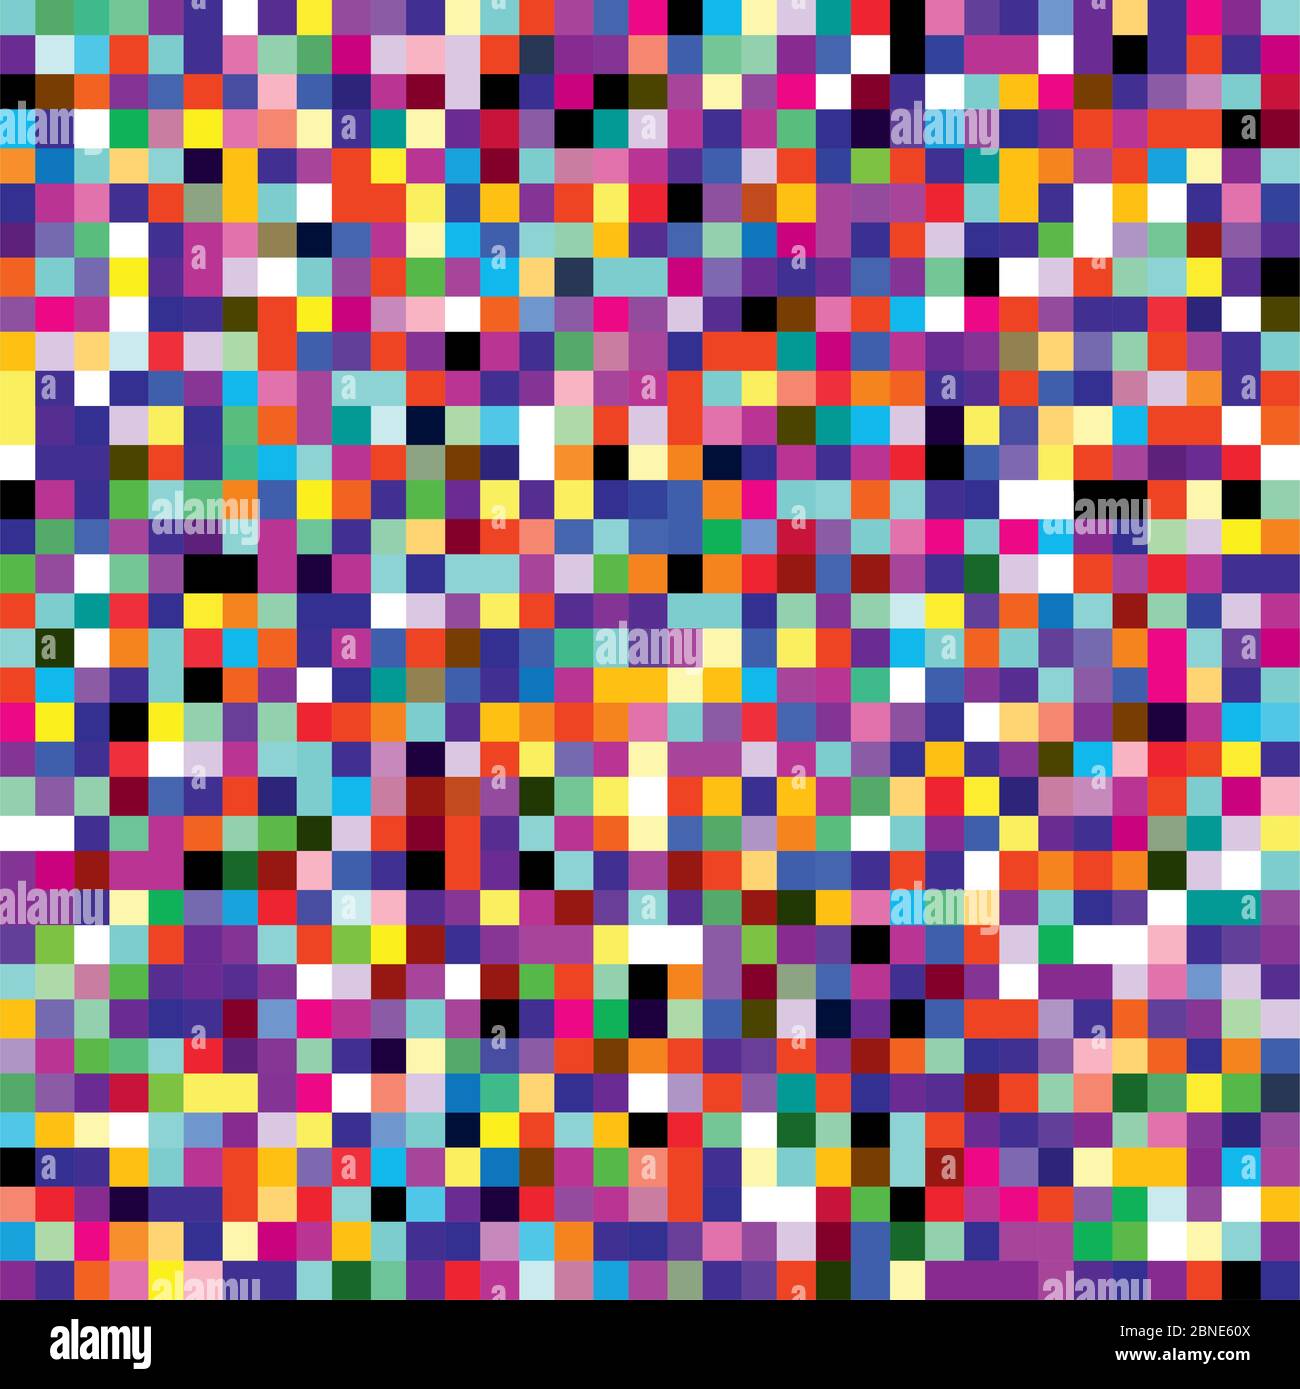 Bunte Pixel Mosaik nahtlose Muster. Wiederholende Textur mit quadratischen Punkten mit mehreren Farben. Retro 8-Bit-Videospiel-Stil geometrische Vektor Hintergrund. Stock Vektor